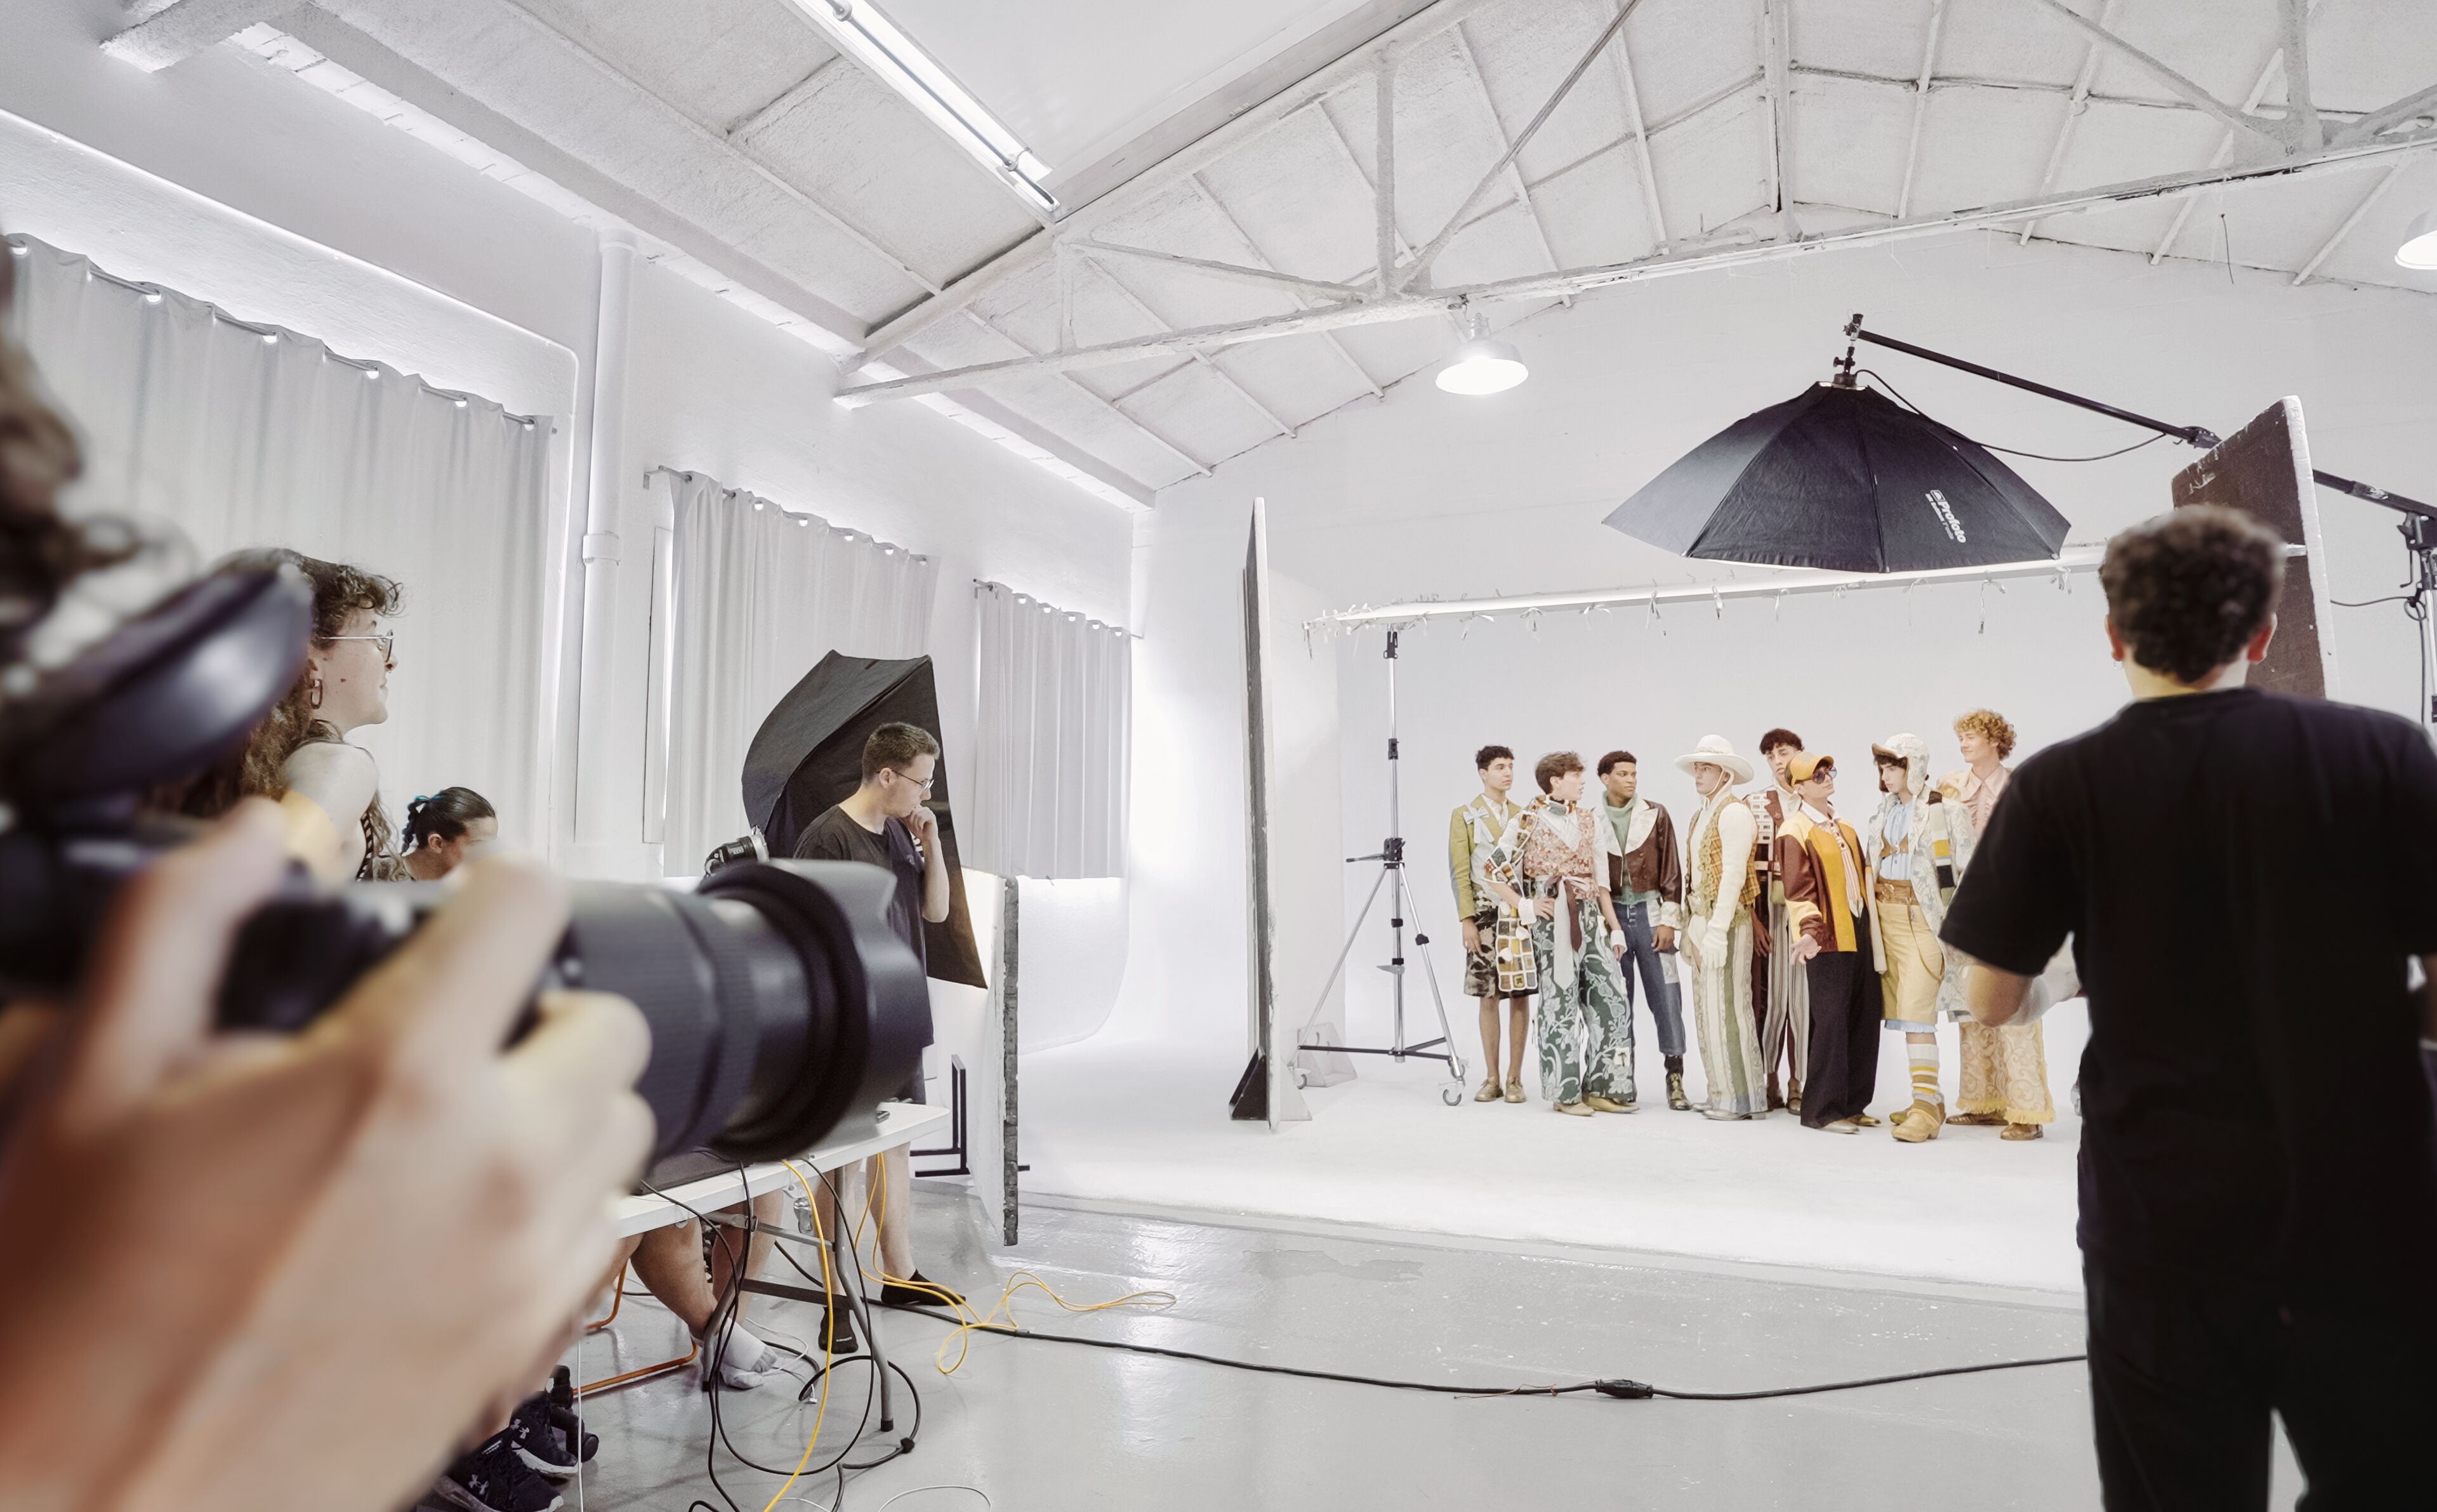 Una ullada entre bambalines a una sessió de fotos de moda amb models i fotògrafs en un entorn d'estudi professional.